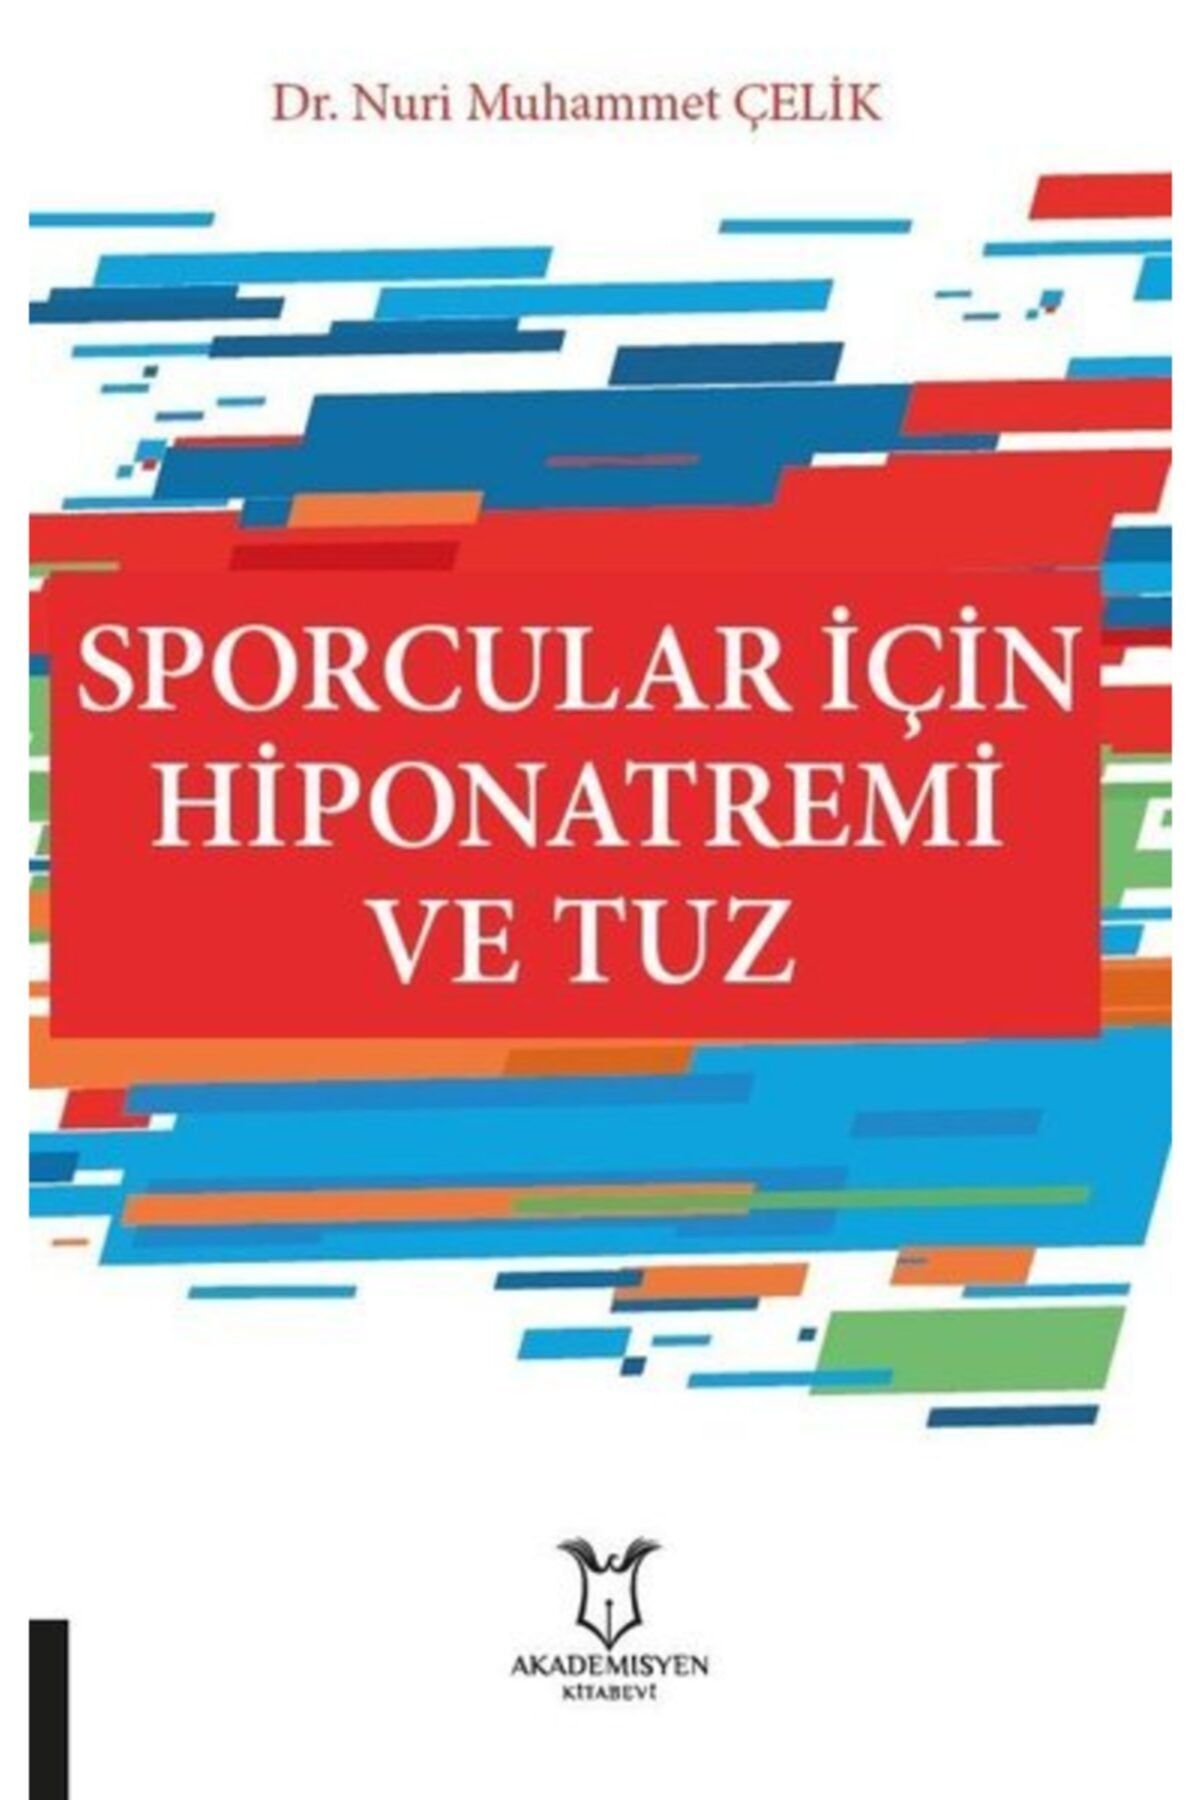 Akademisyen Kitabevi Sporcular Için Hiponatremi Ve Tuz - Nuri Muhammet Çelik 9786257679060